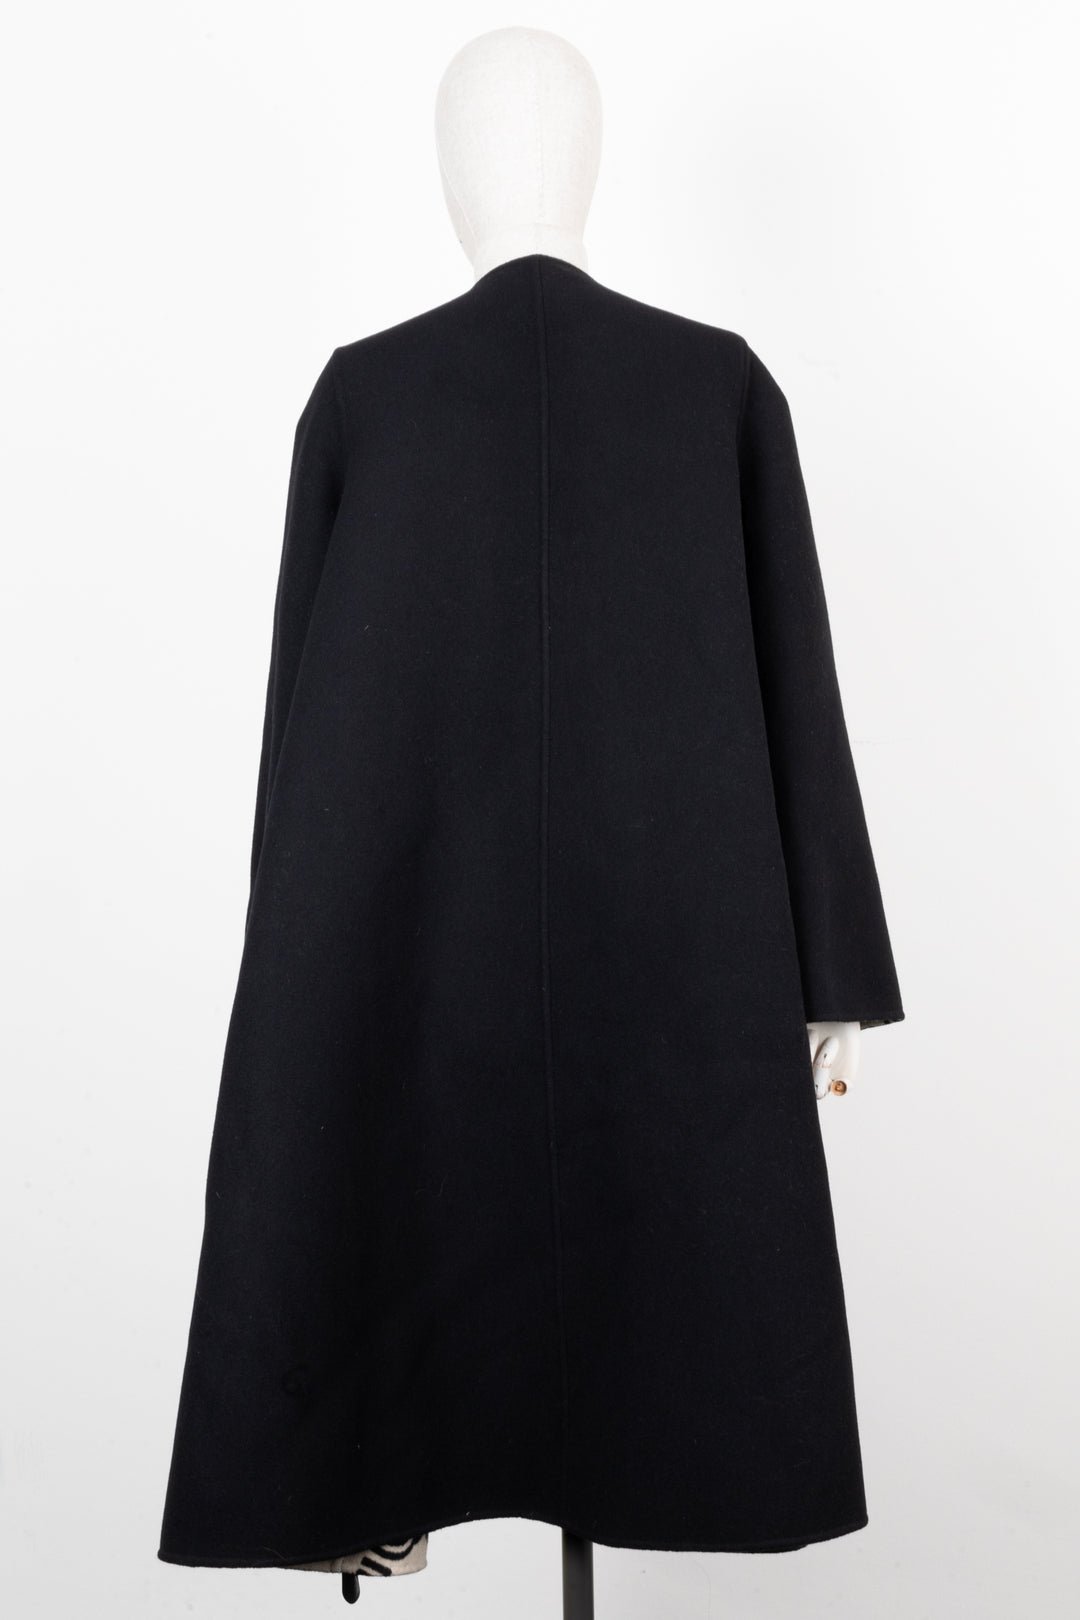 GUCCI Reversible GG Coat Wool Brown Black